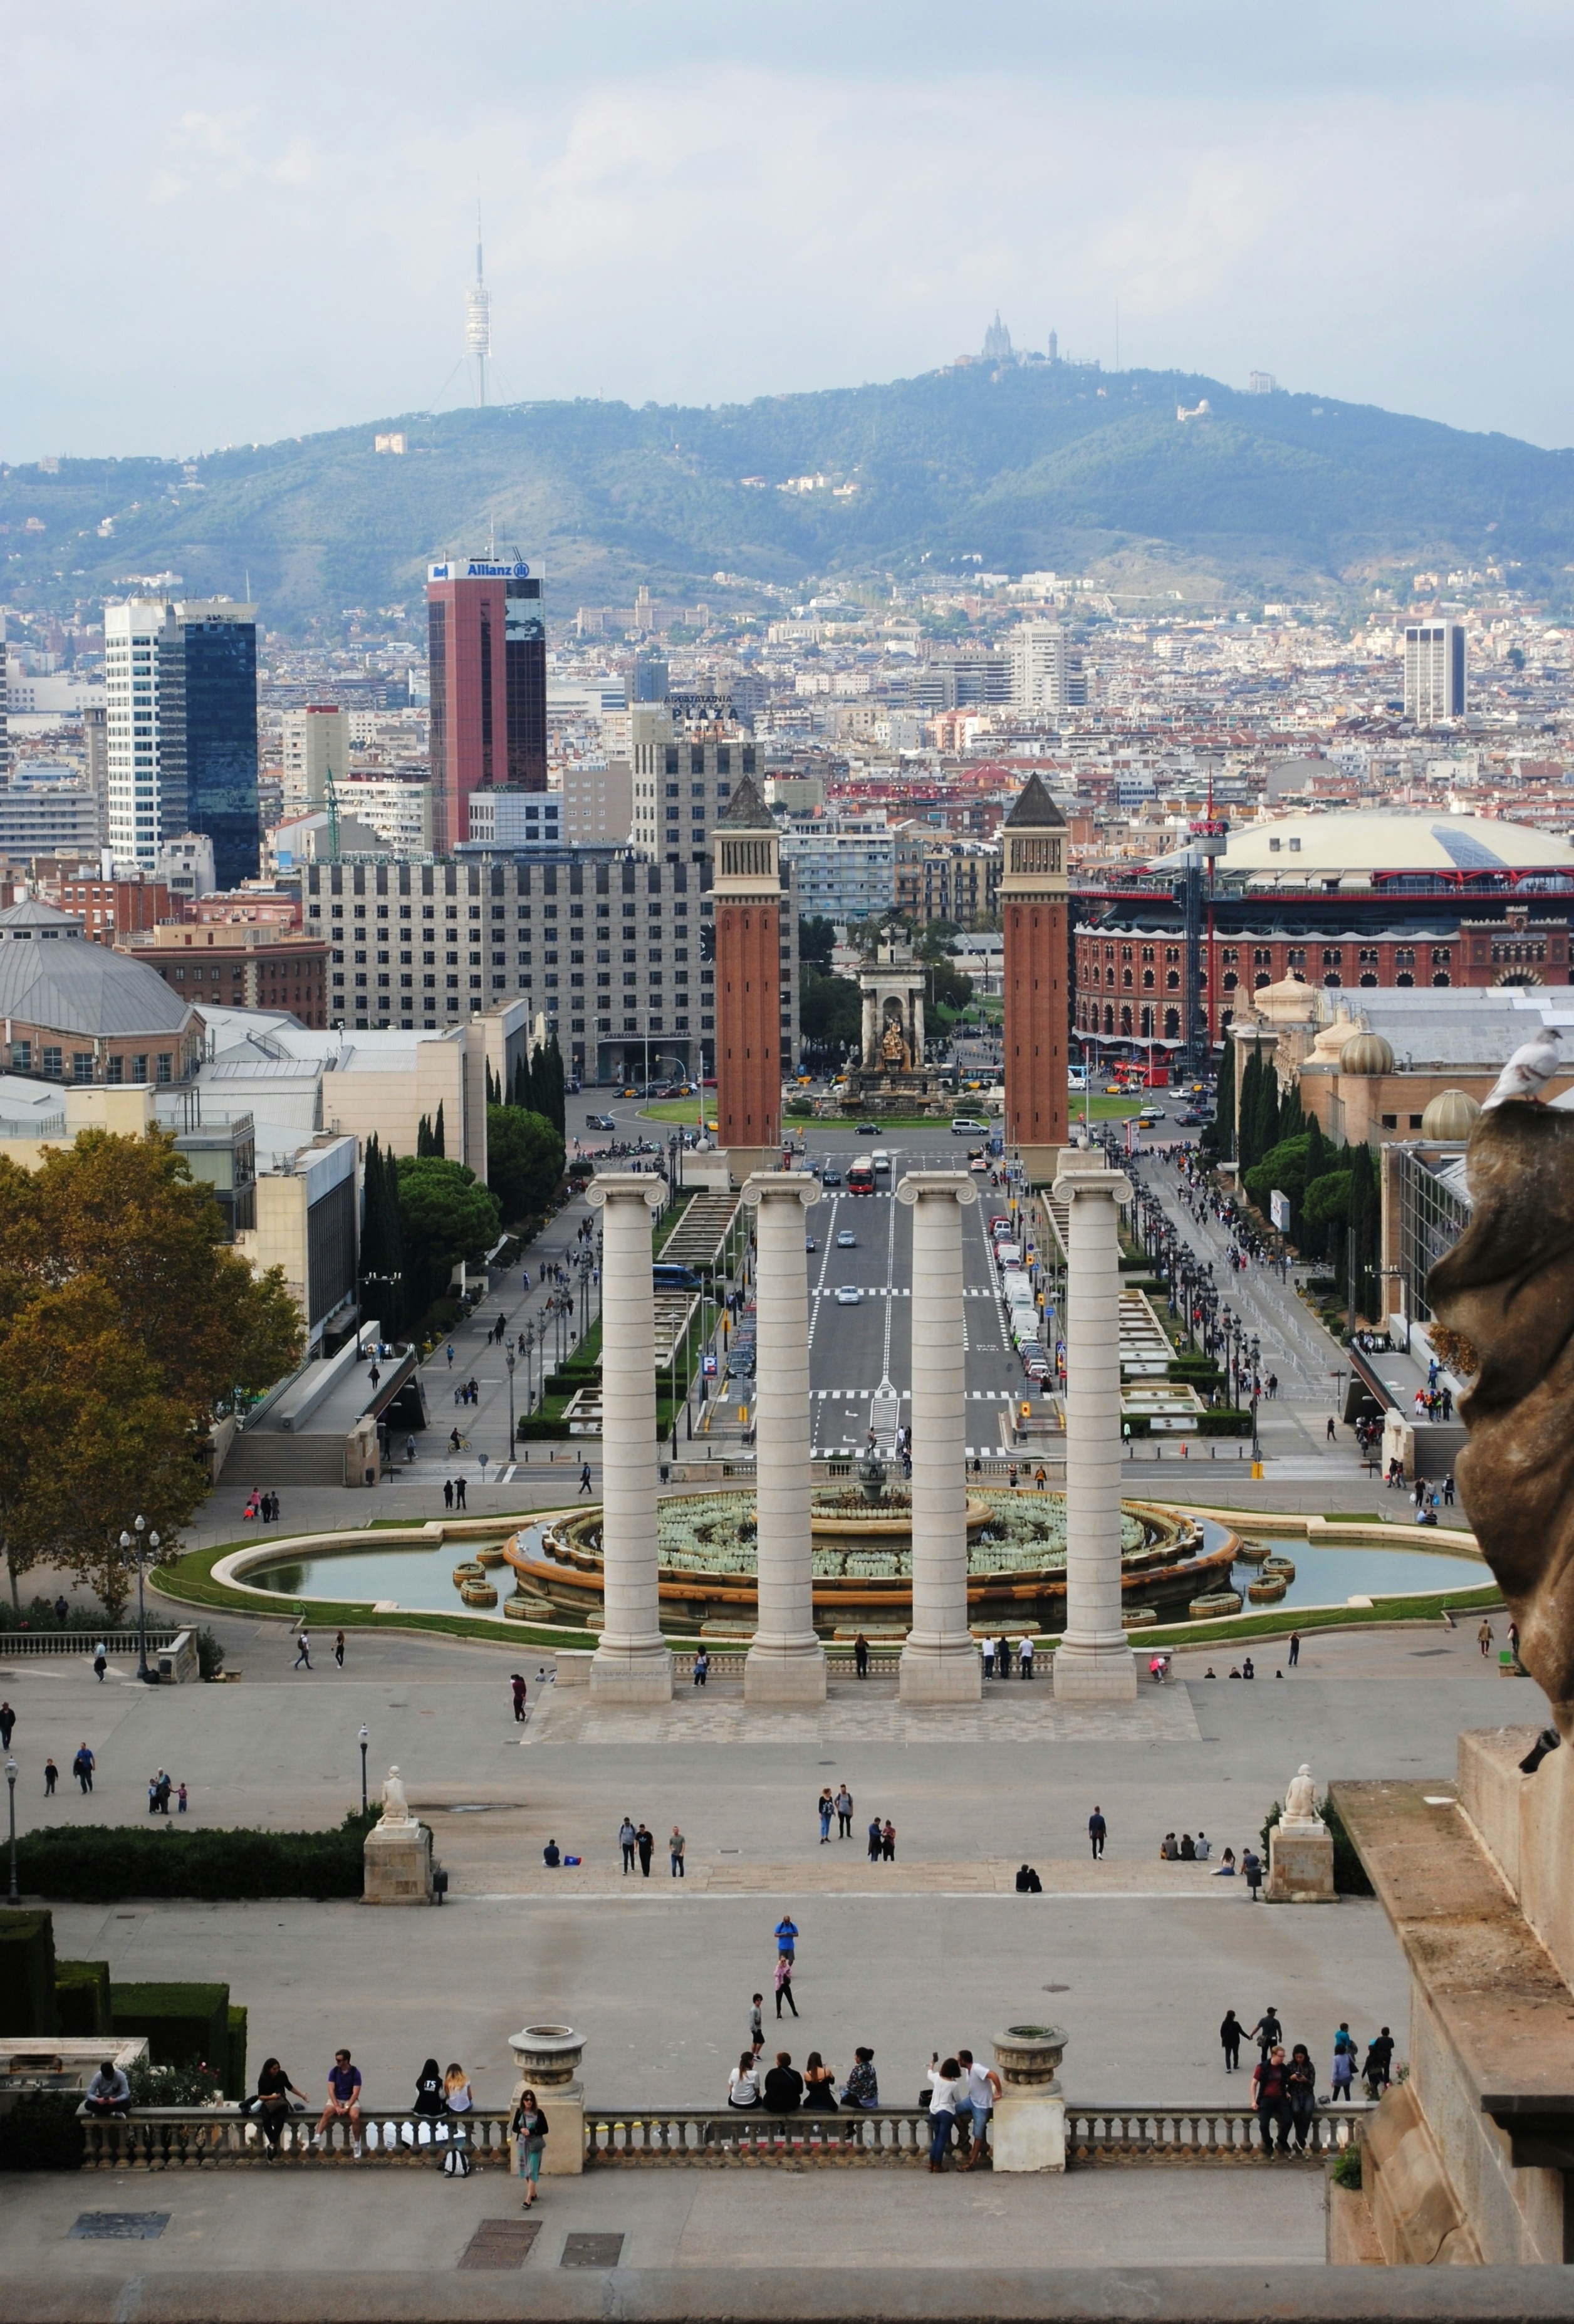 panoramic view of Barcelona from the Museu Nacional d'Art de Catalunya